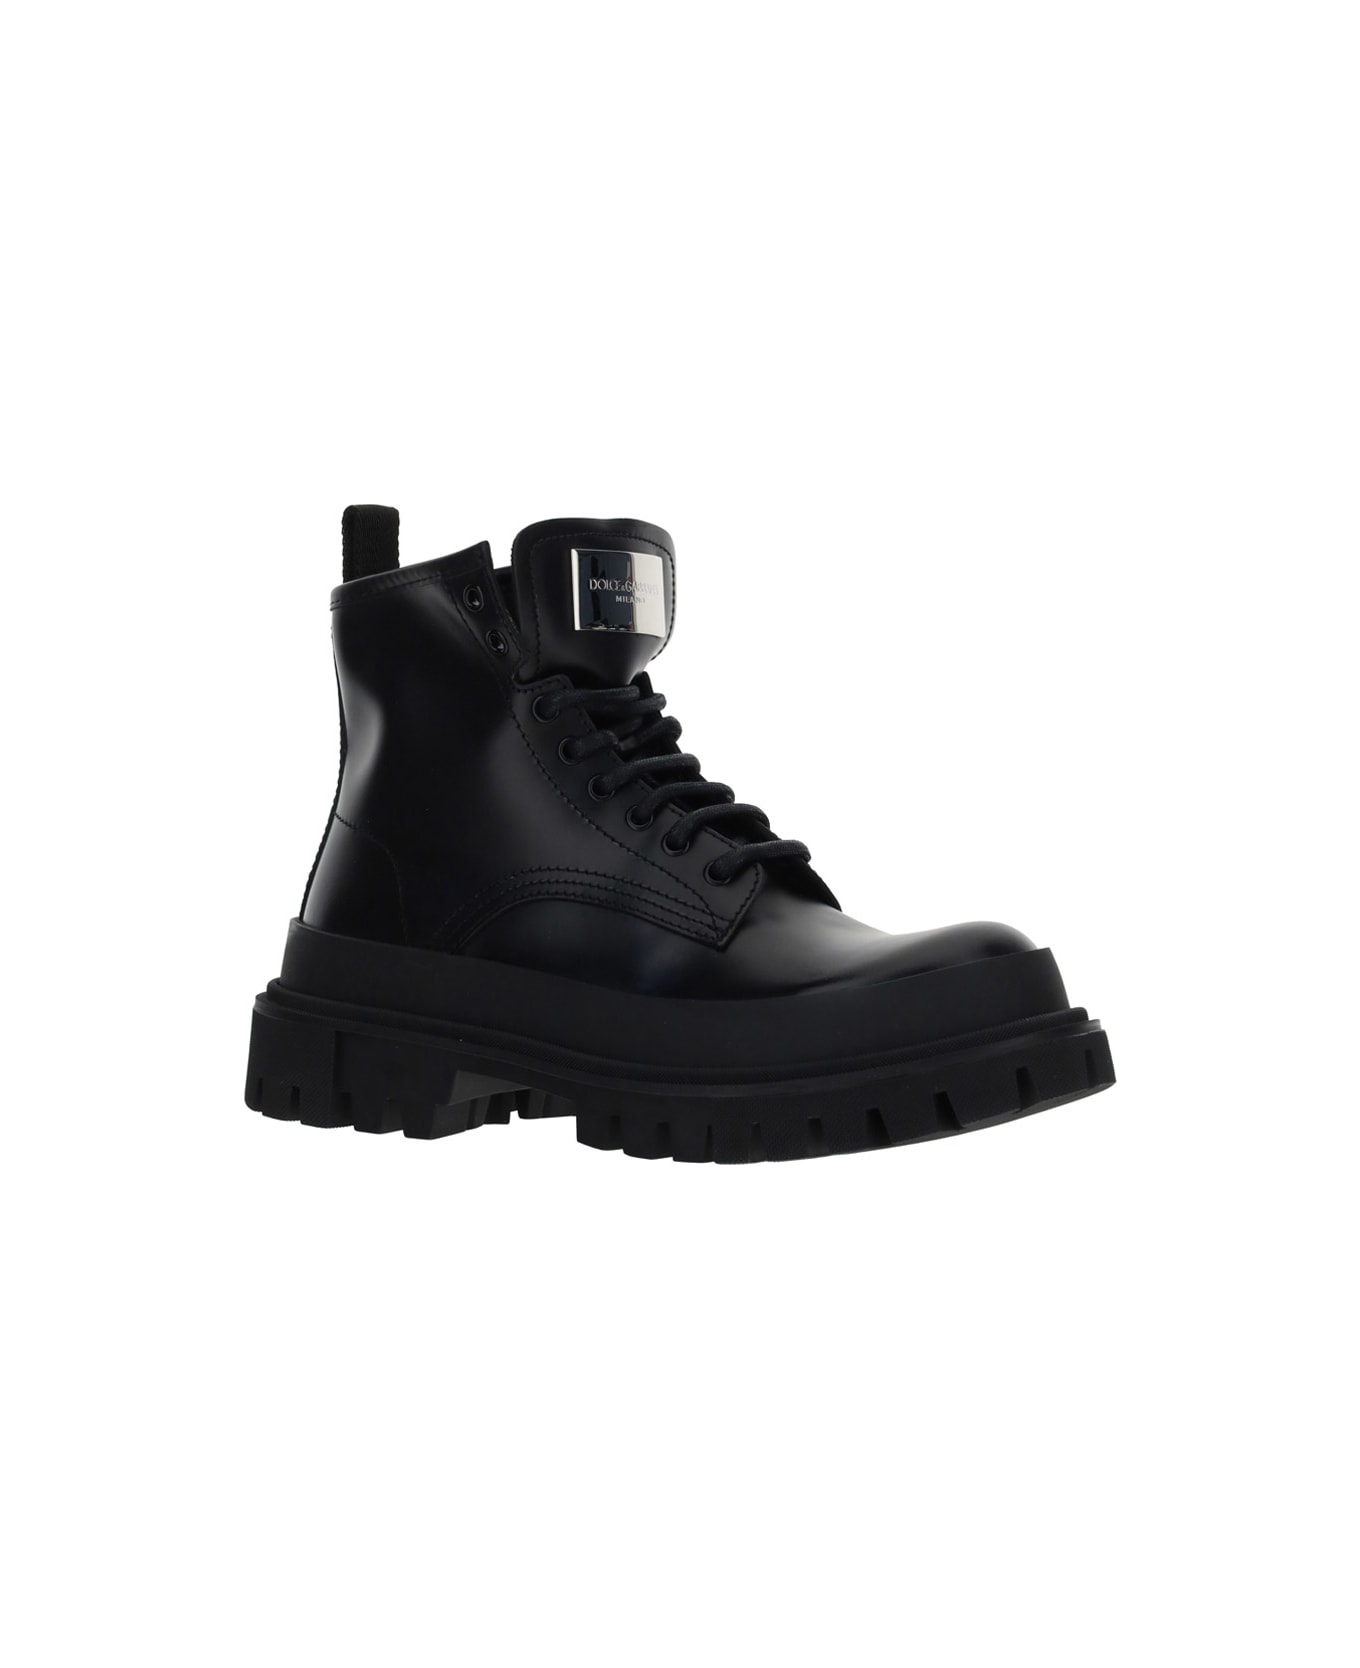 Dolce & Gabbana Ankle Boots - NERO NERO